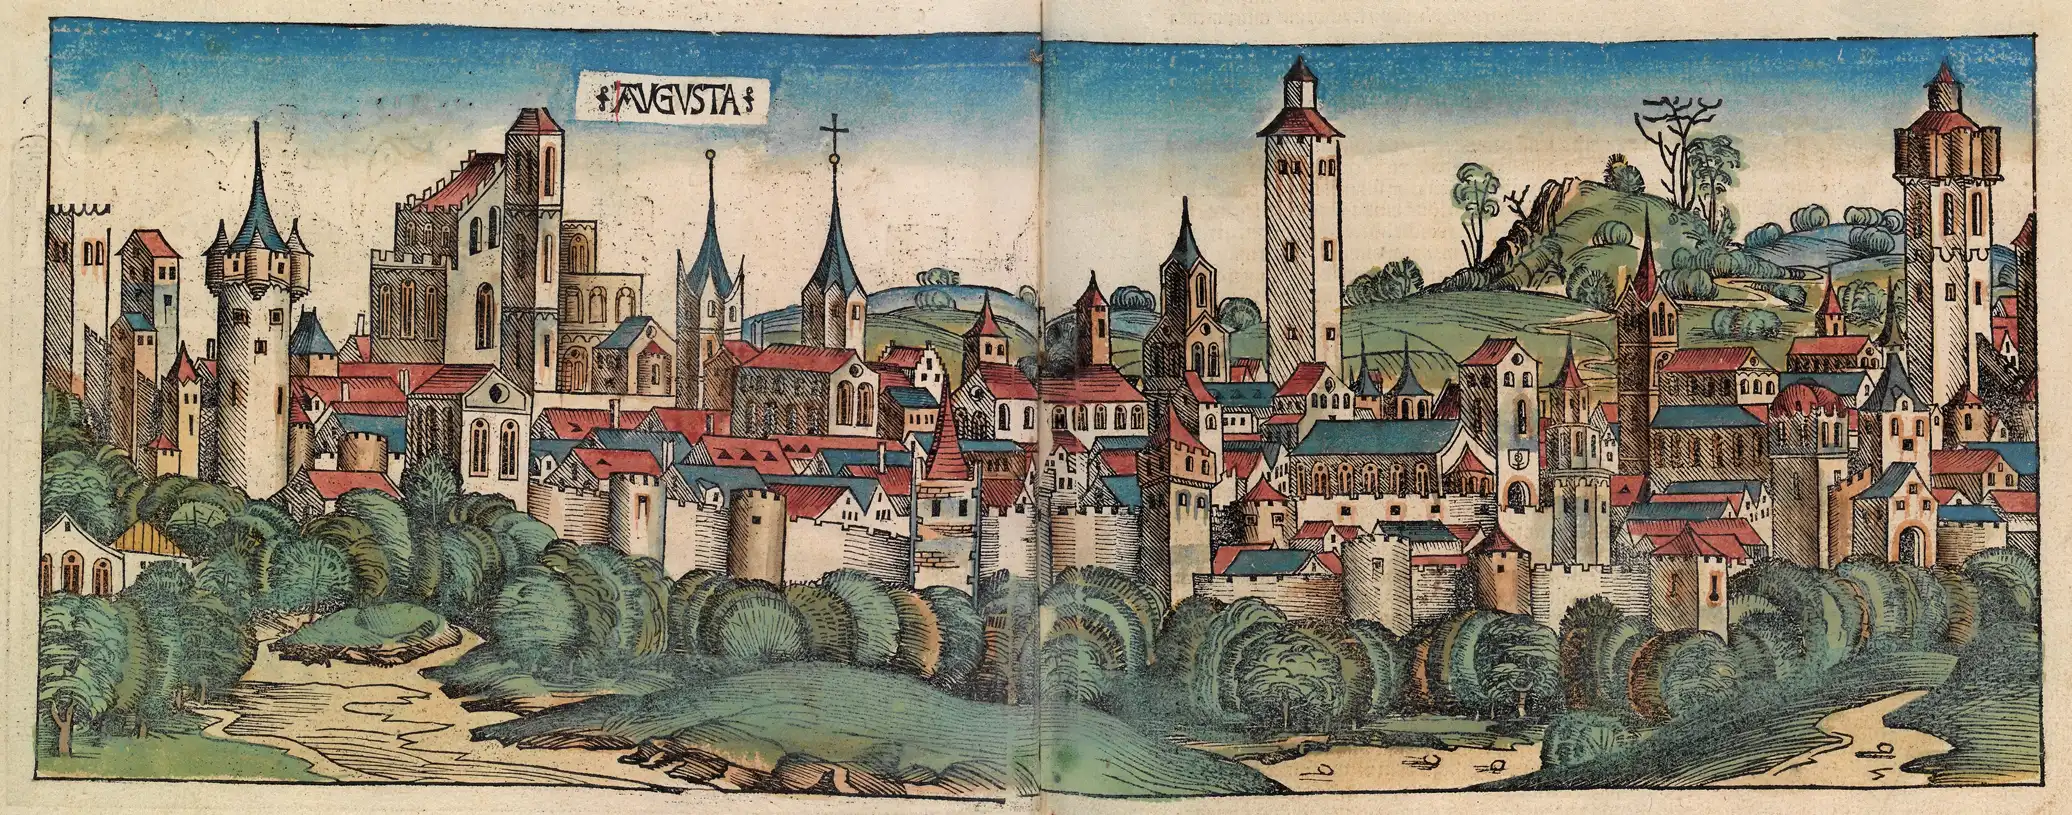 Holzschnitt von Augsburg aus Schedel'schen Weltchronik, 1493